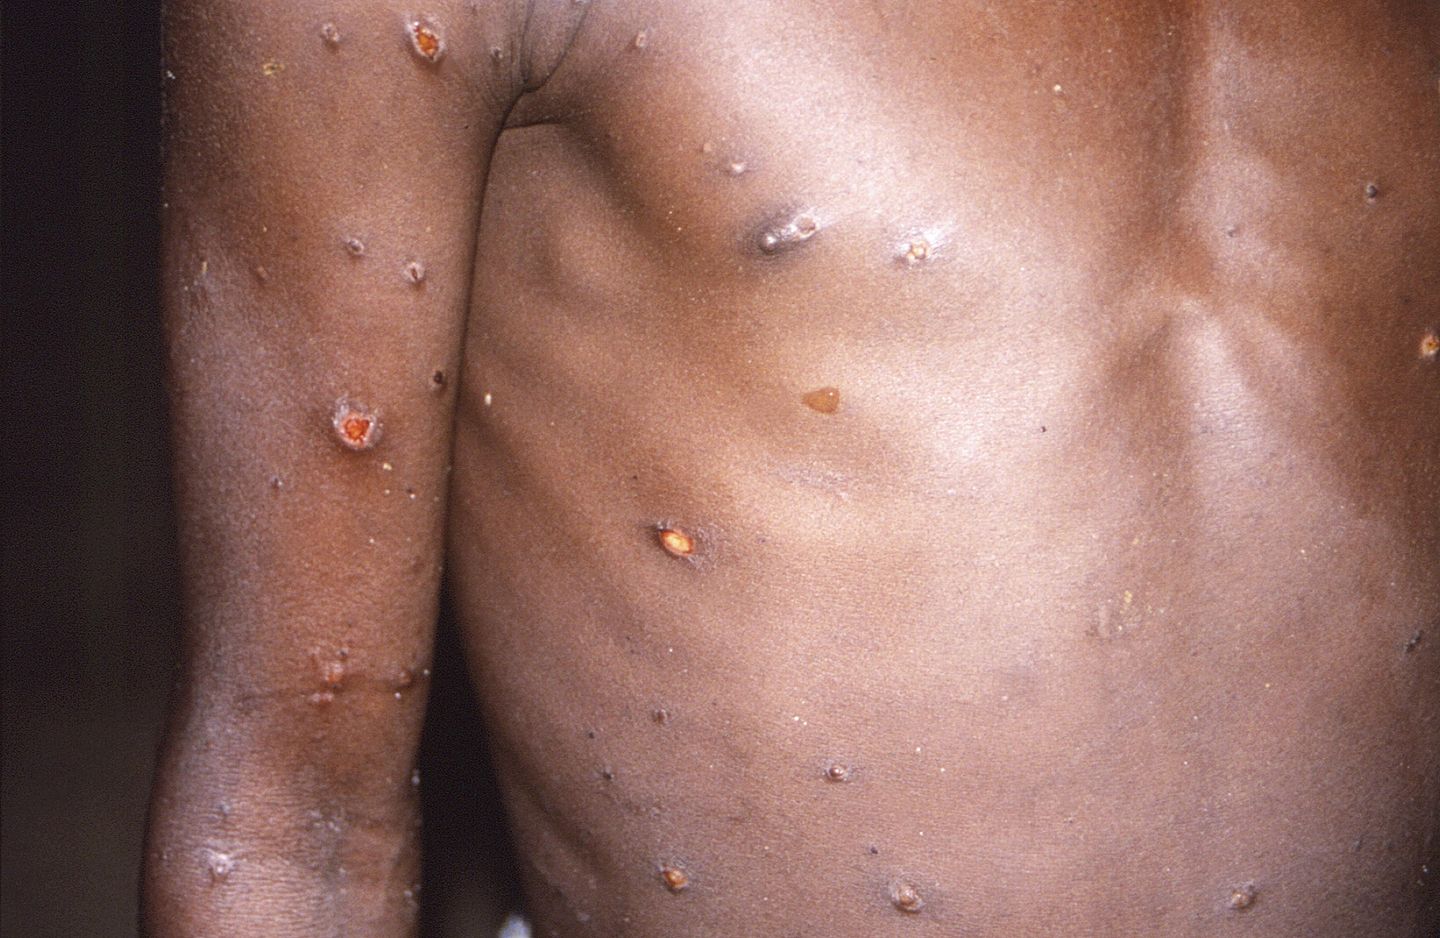 DSÖ Afrika, Monkeypox salgınının birleşik bir yanıta ihtiyacı olduğunu söylüyor